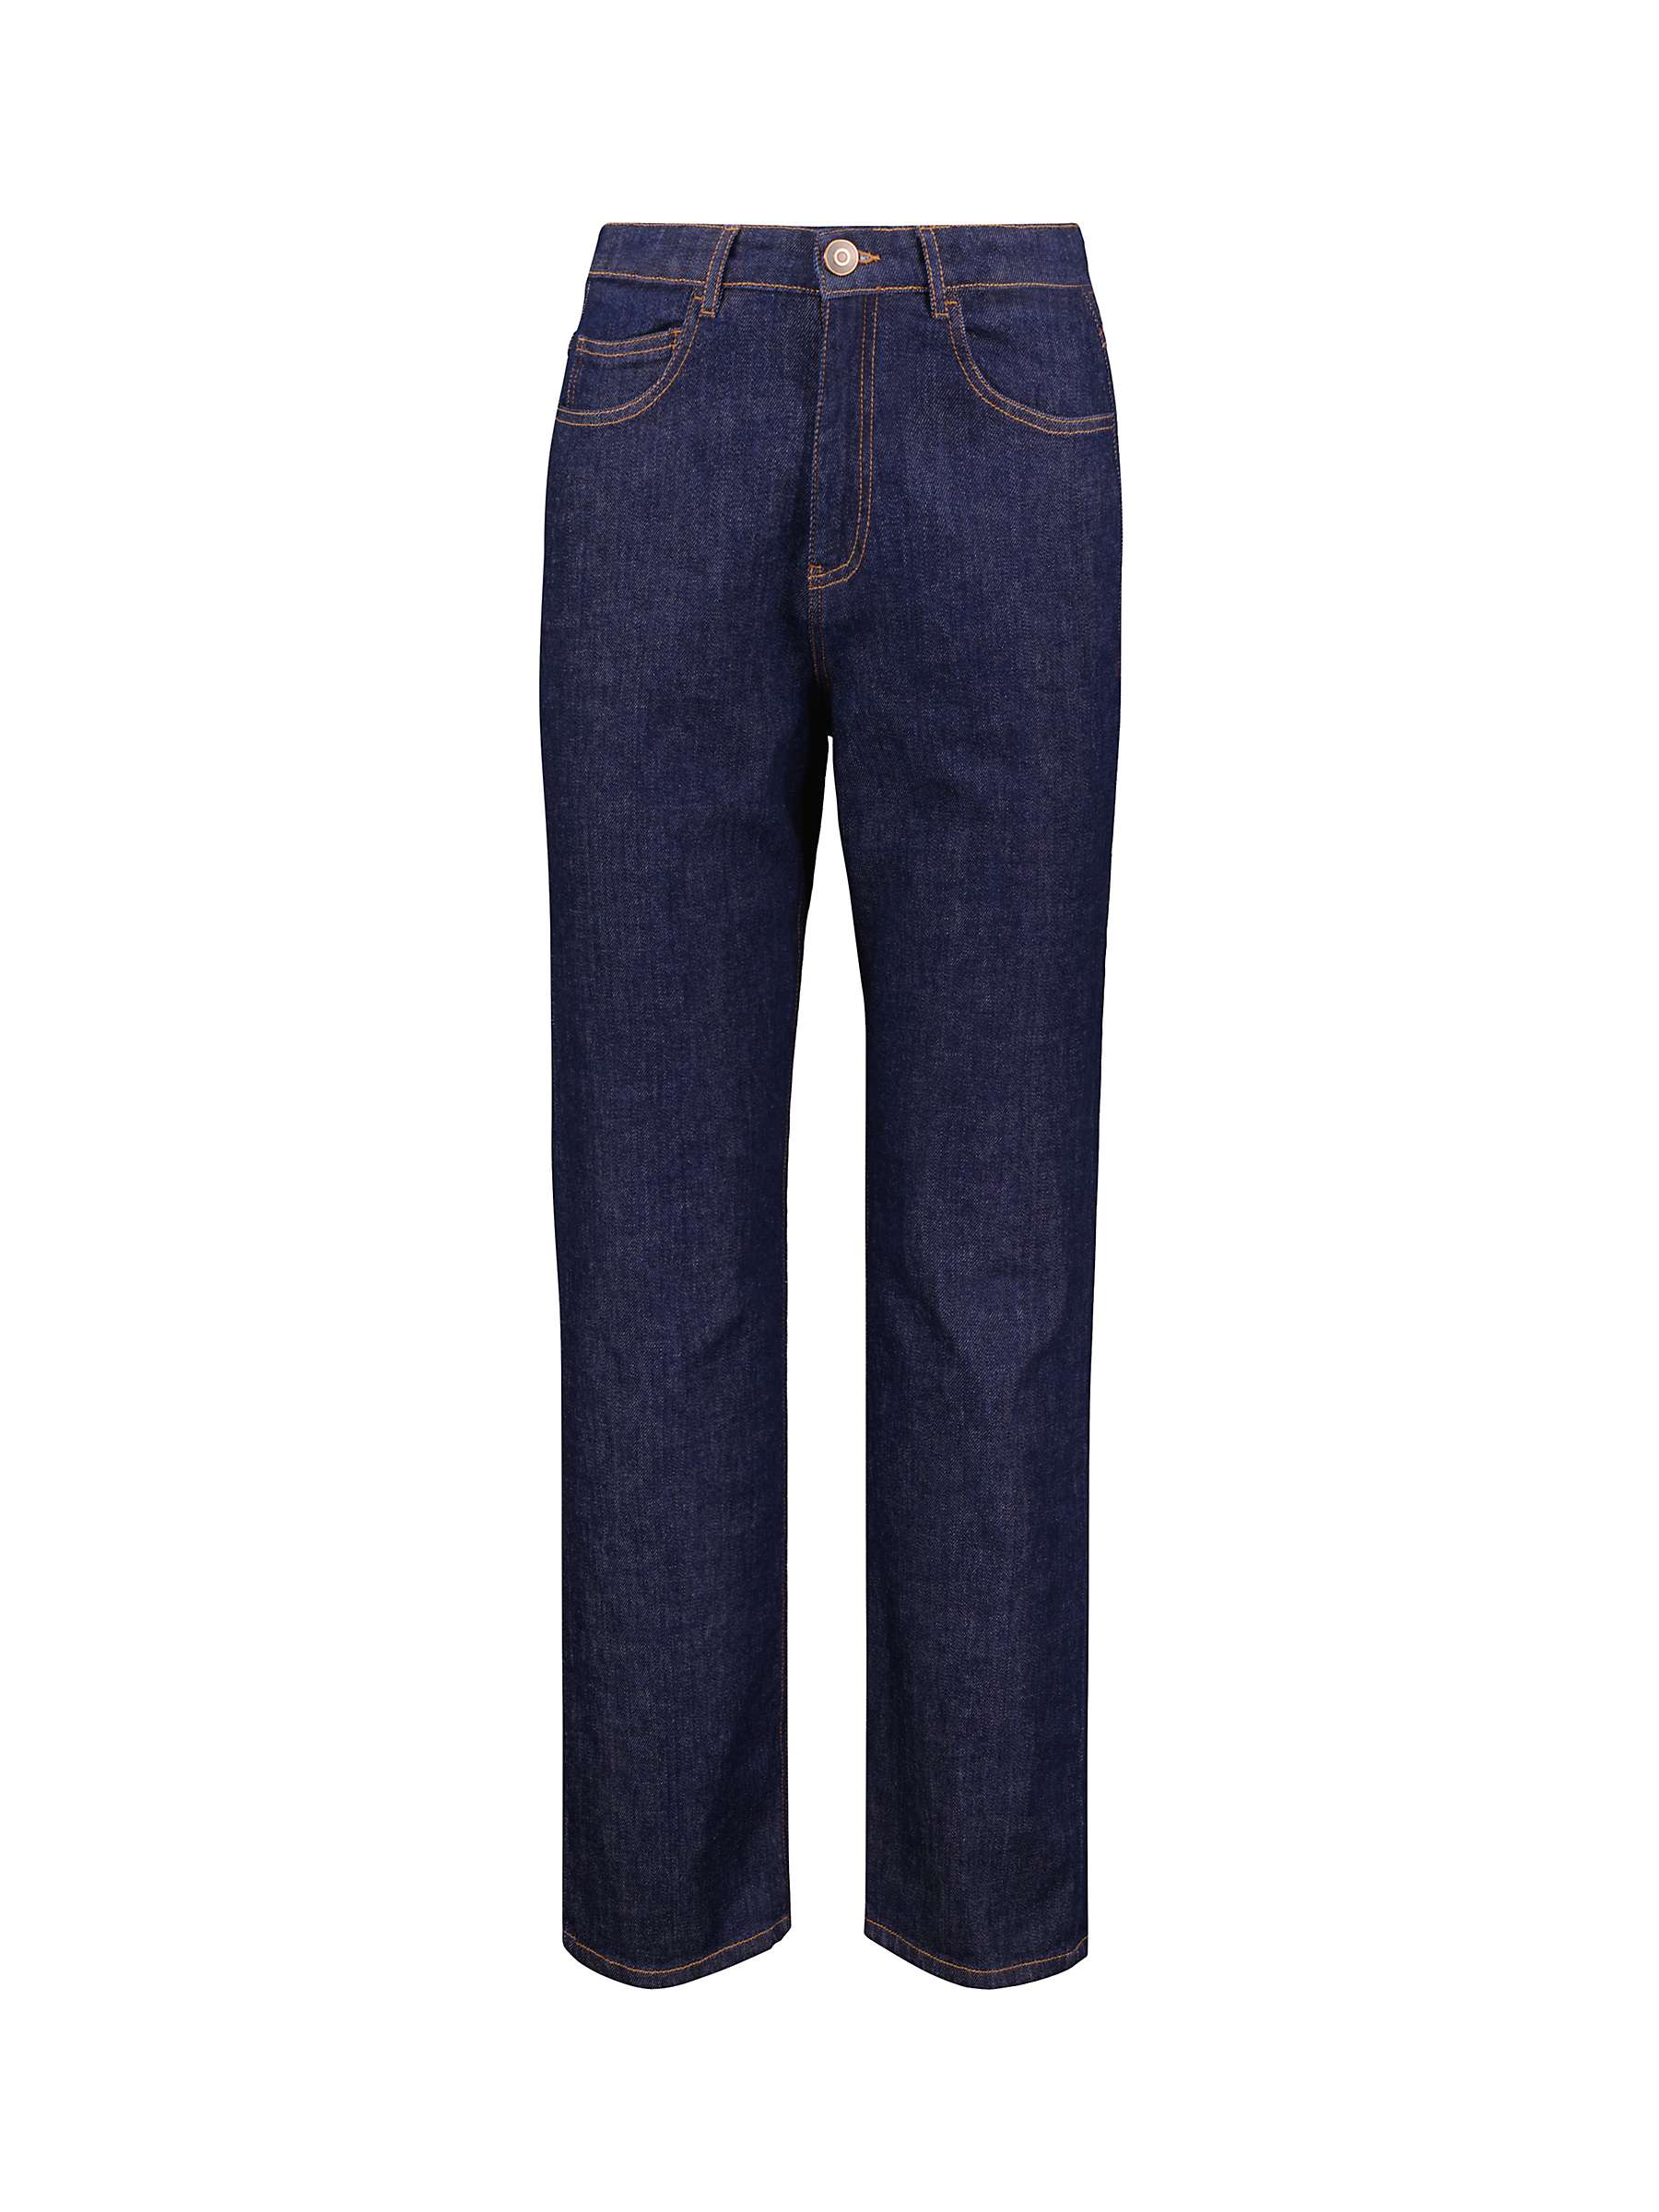 Buy Baukjen Organic Cotton Straight Denim Jeans, Dark Blue Online at johnlewis.com